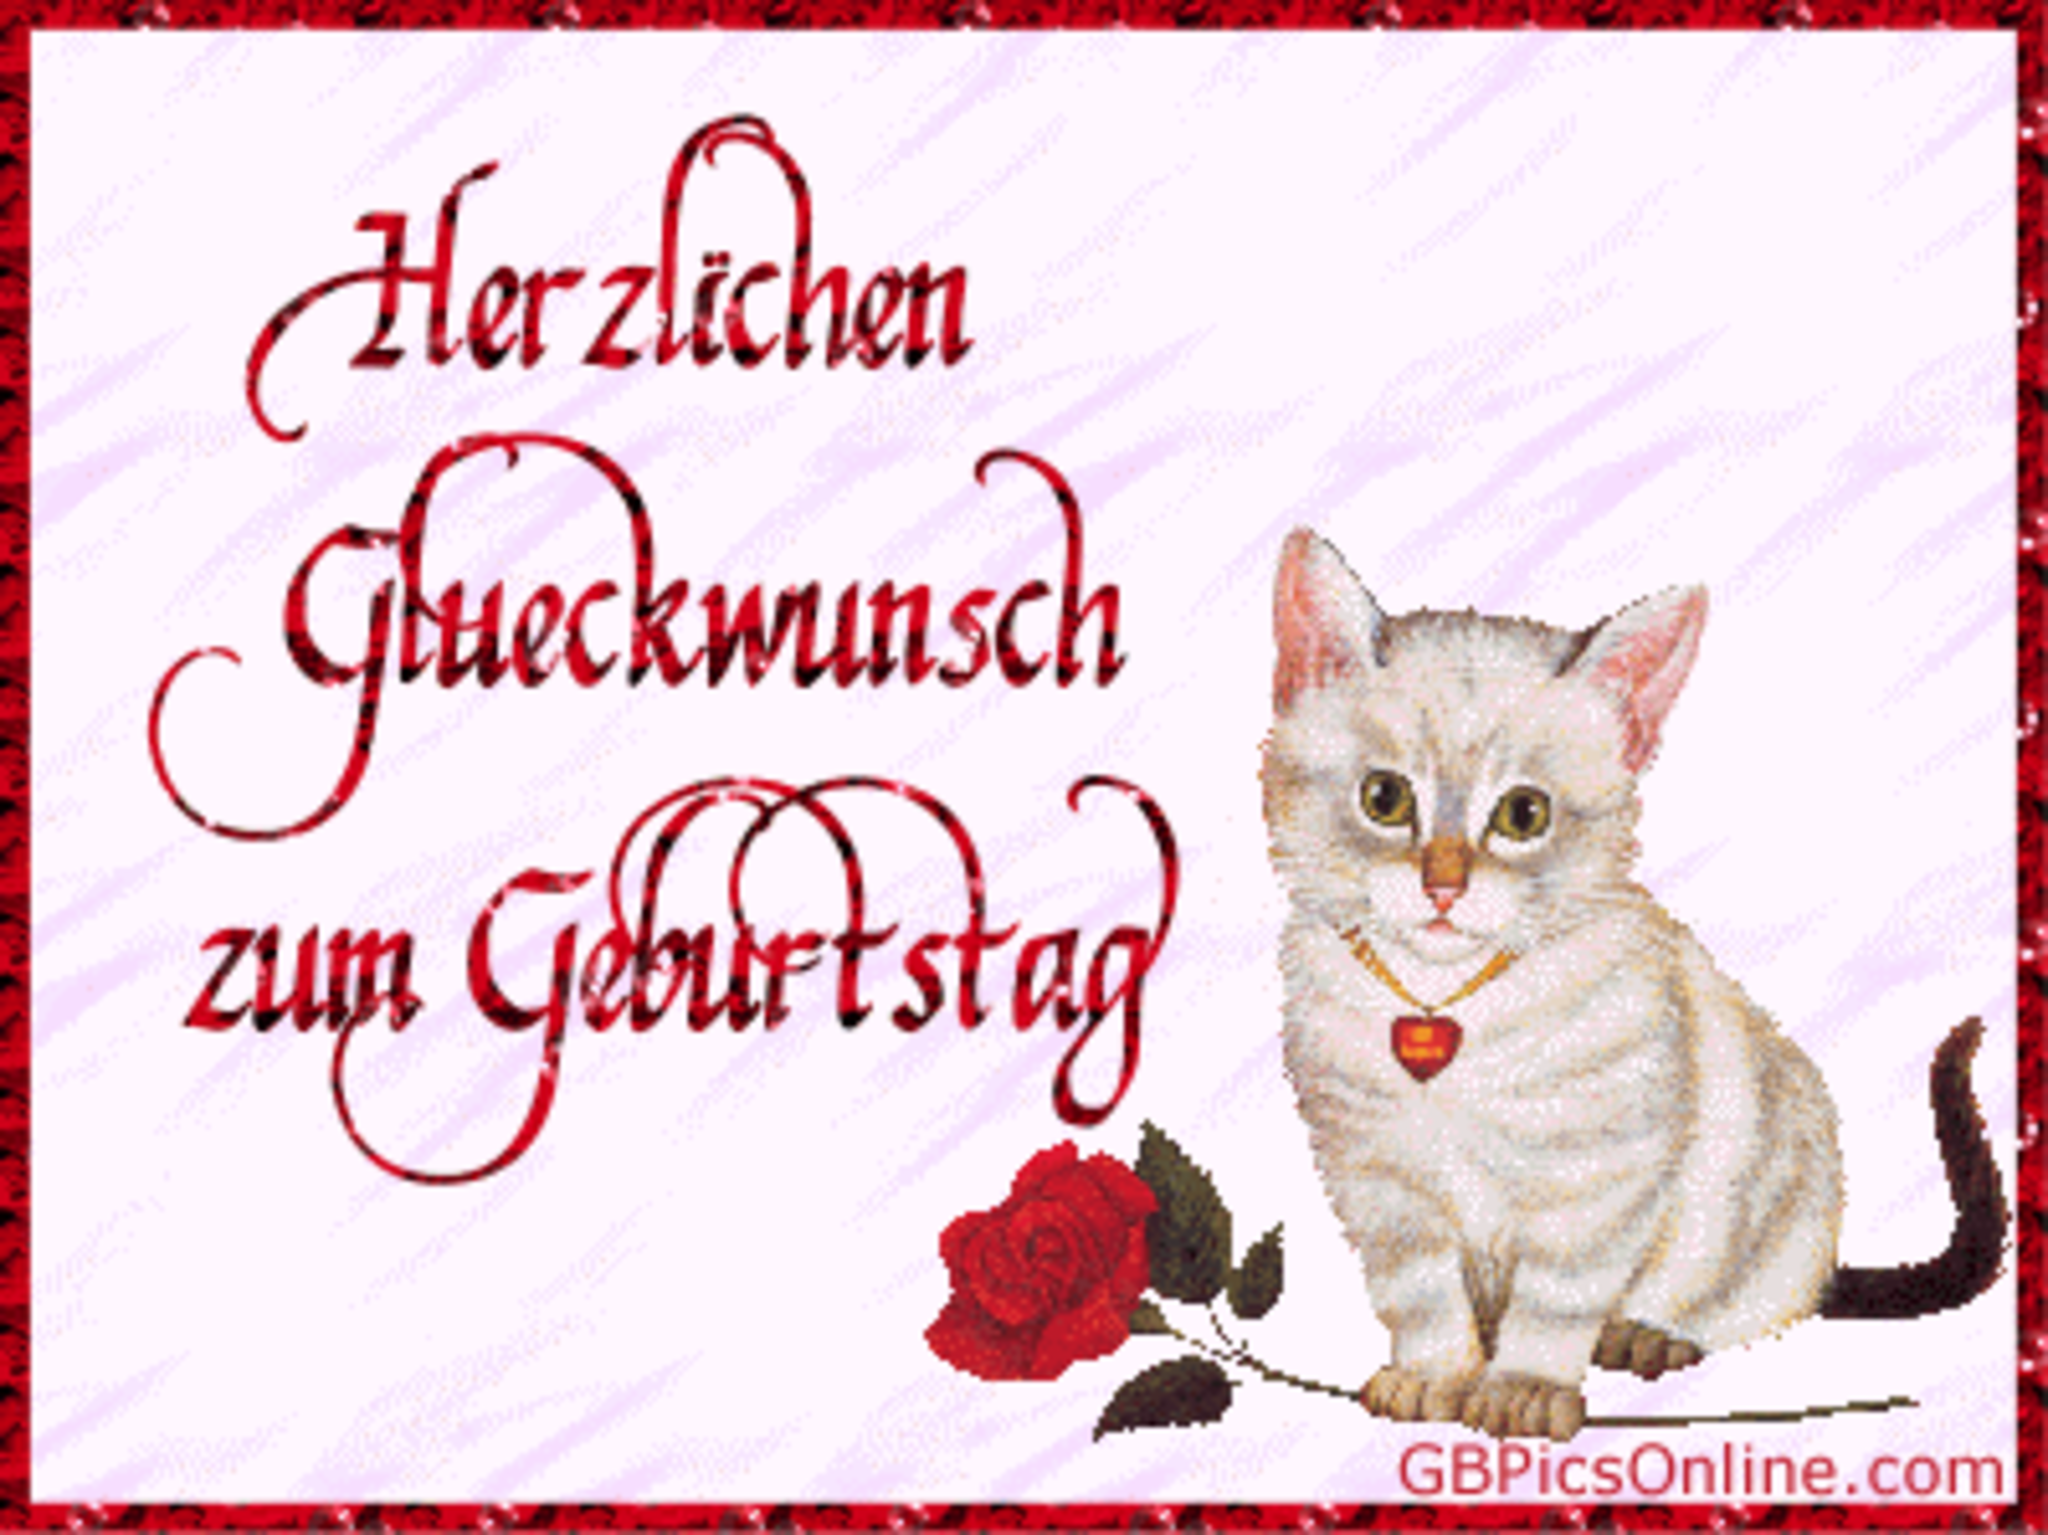 С днем рождения на немецком языке женщине. Поздравления с днём рождения мужчине на немецком языке. Поздравительная открытка с днём рождения на немецком языке. Немецкие открытки с днем рождения. Поздравление с др на немецком.